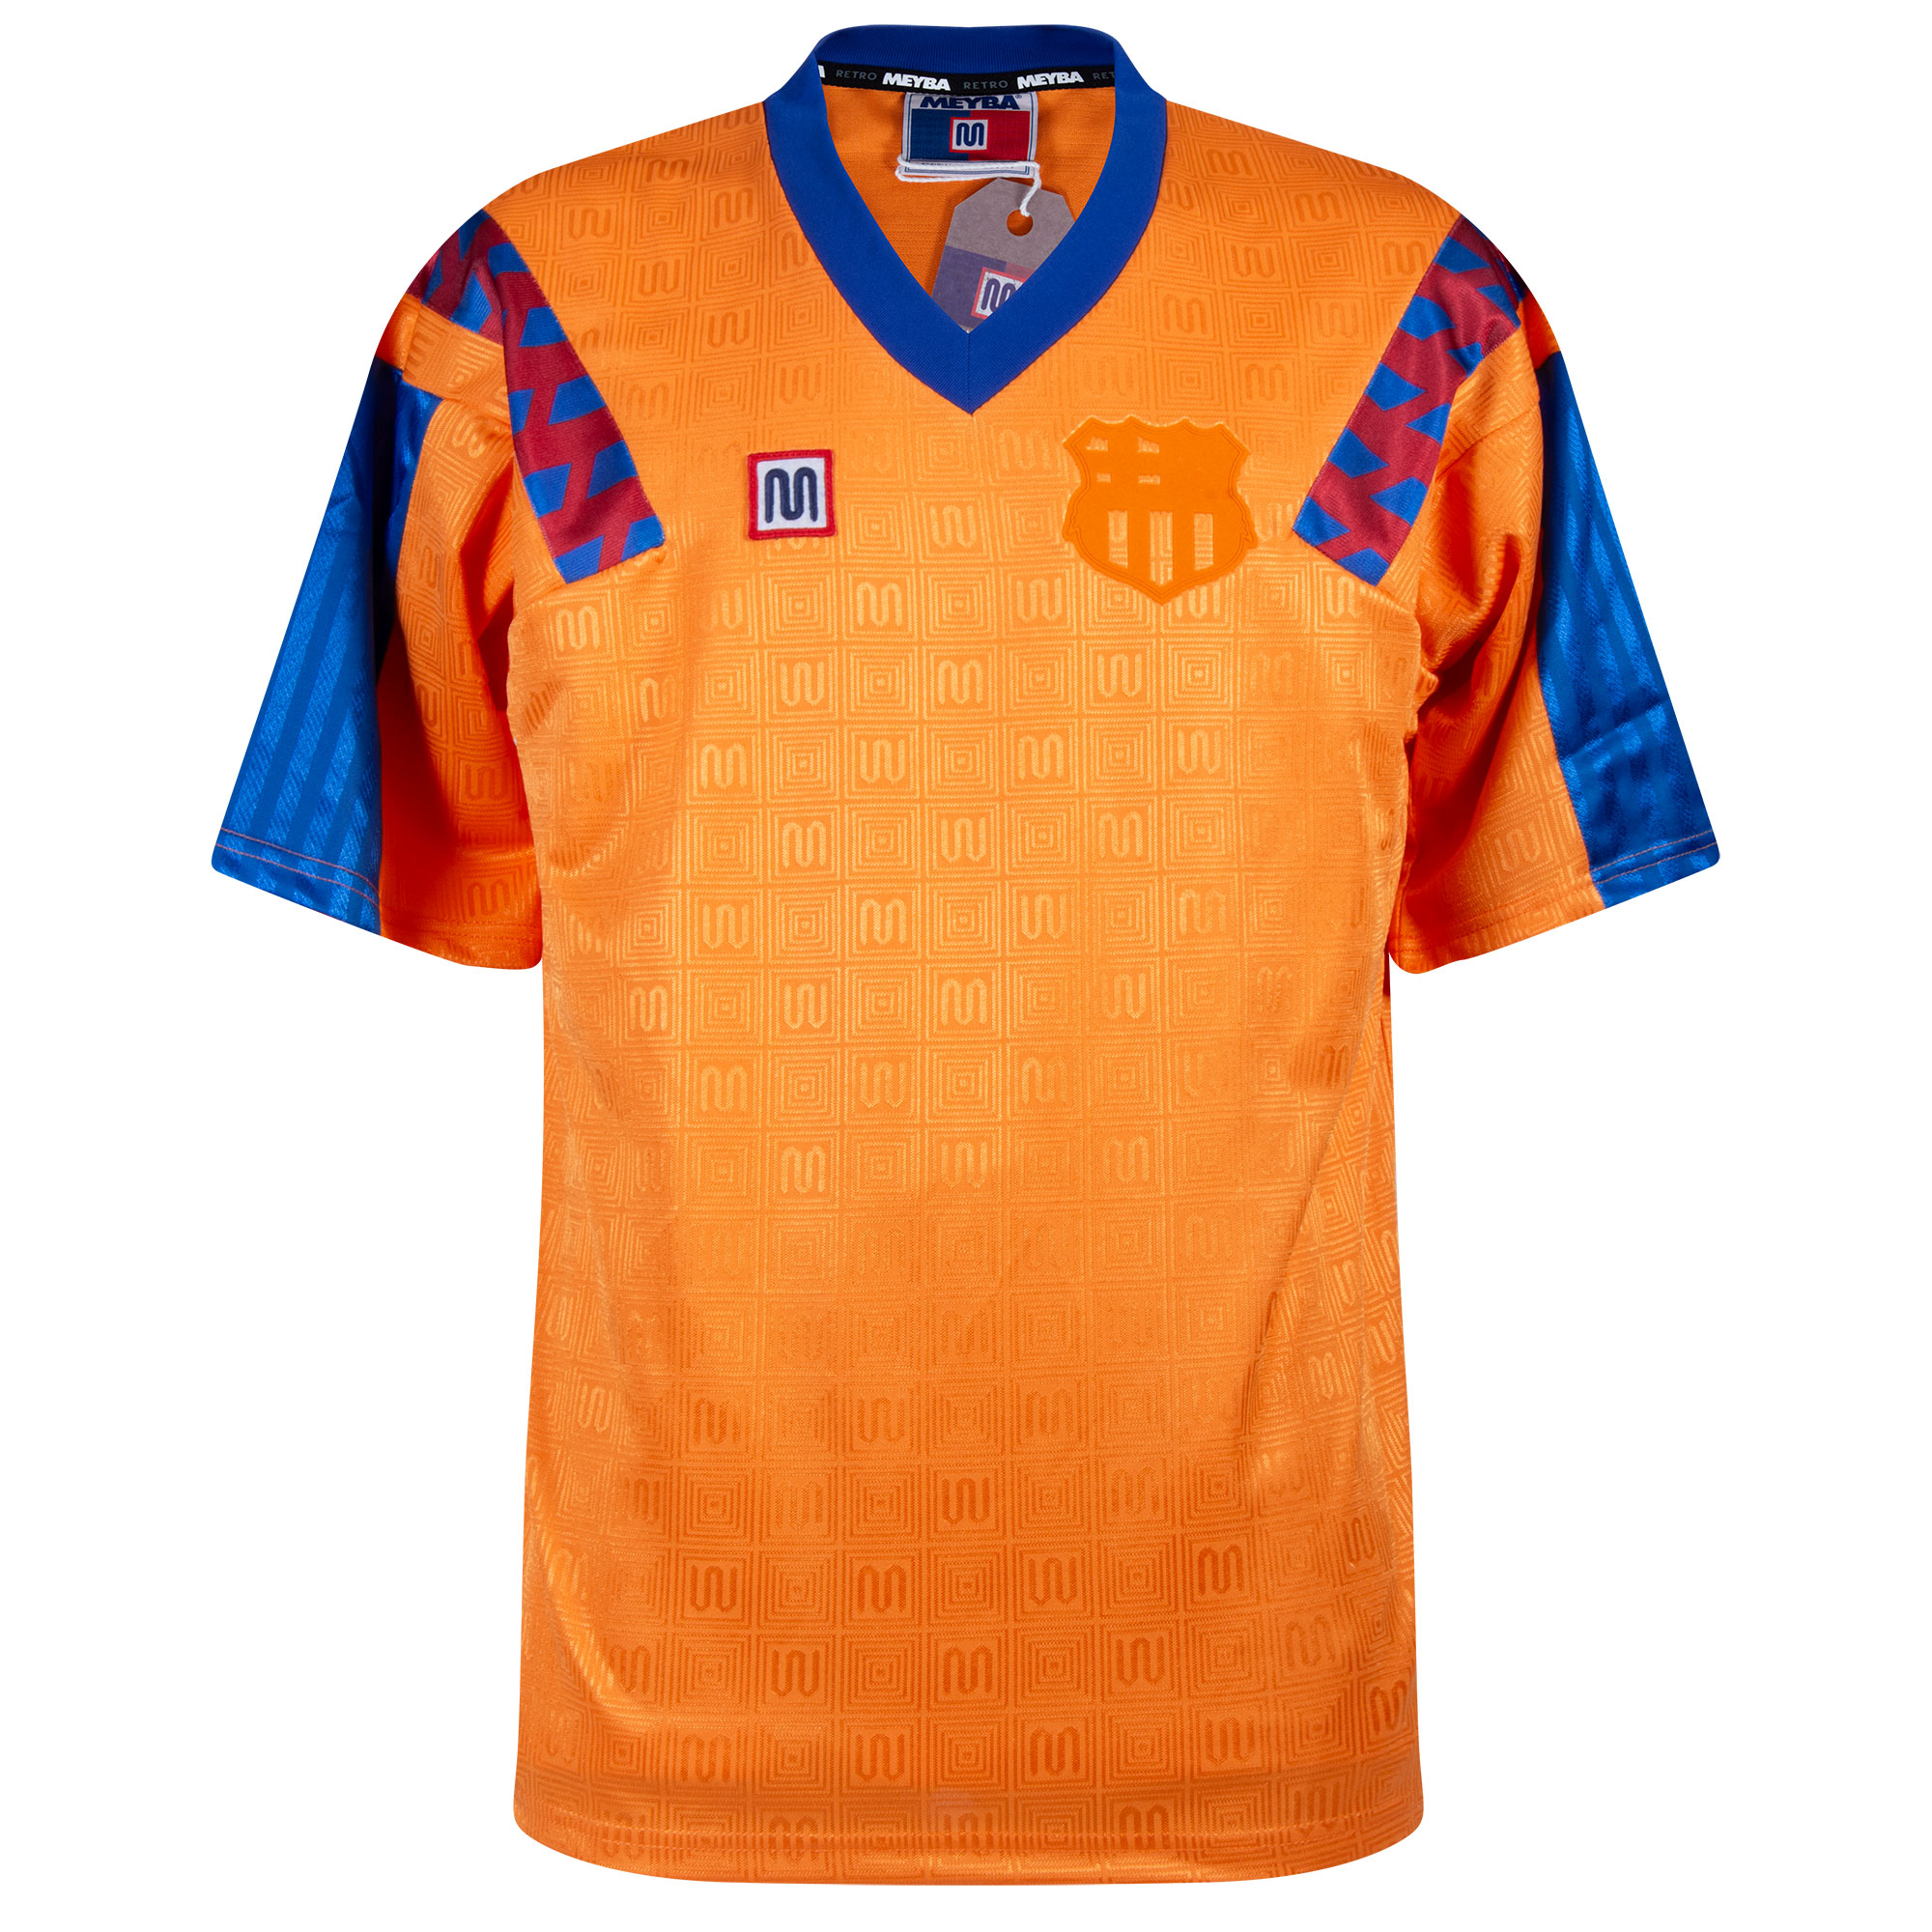 Meyba Blaugrana Retro Shirt Uit 1991-1992 - L Top Merken Winkel